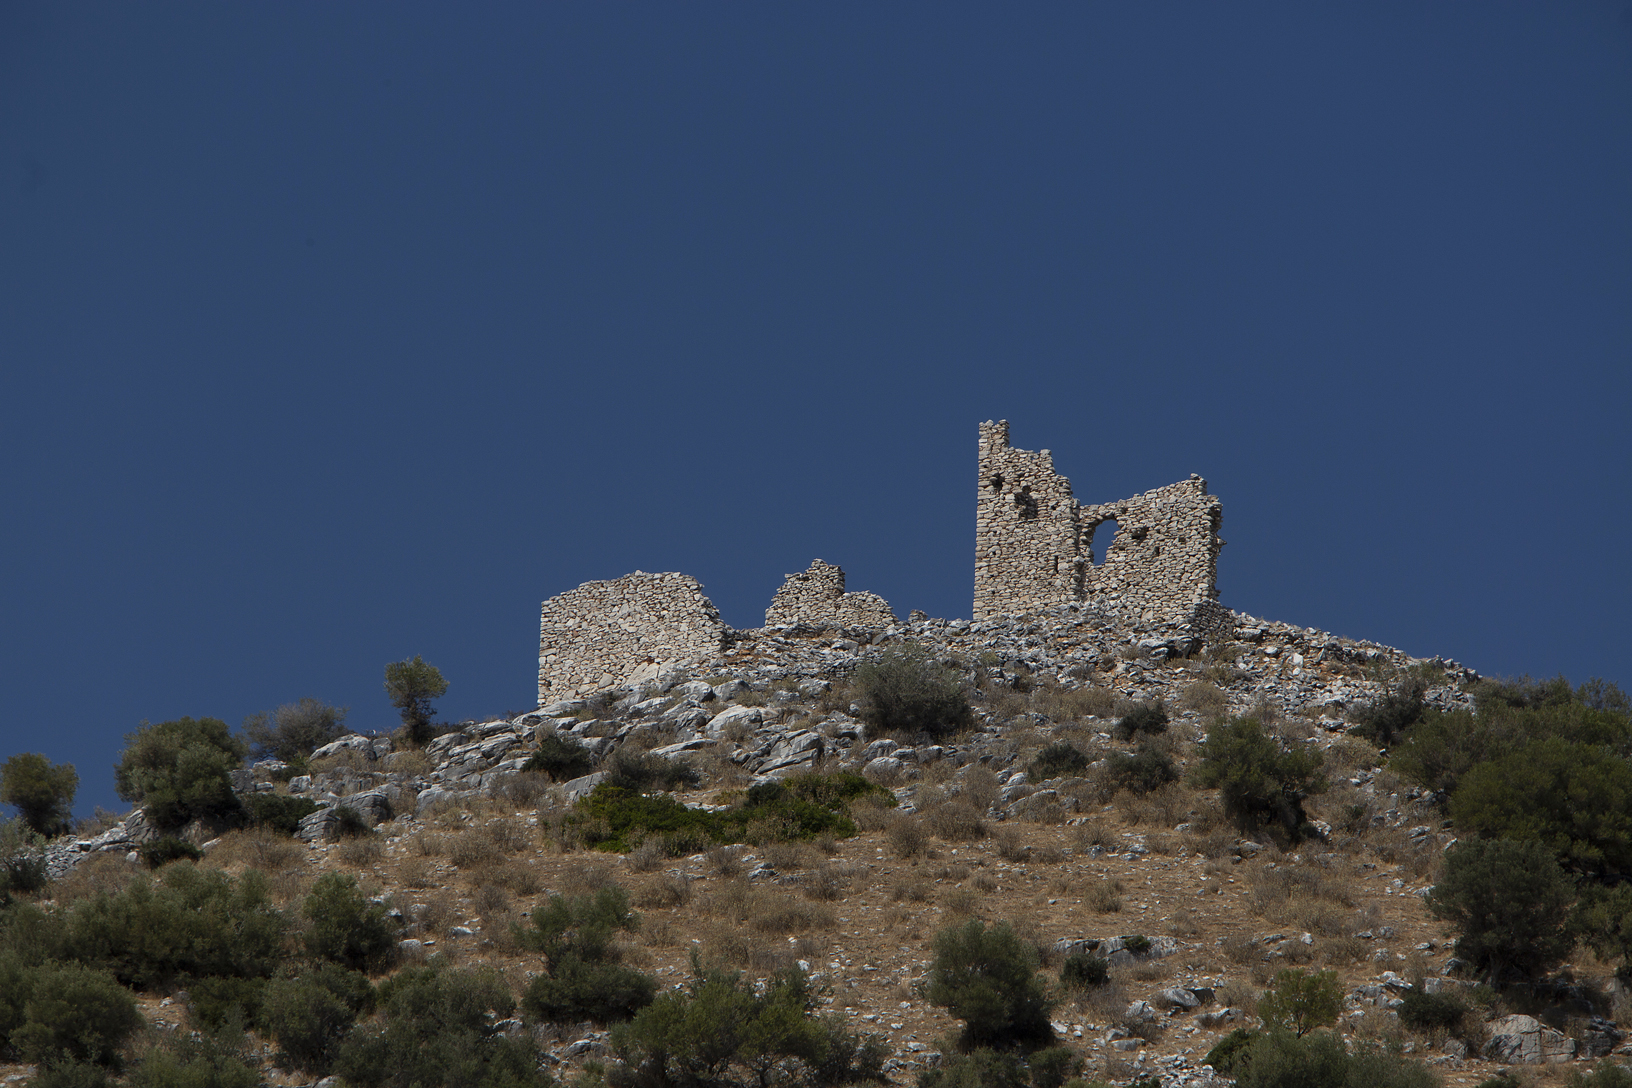 Κάστρο Μηλάκι, χωριό Μηλάκι. Φωτογραφία: ©Βασίλης Συκάς, για τον Δήμο Κύμης-Αλιβερίου